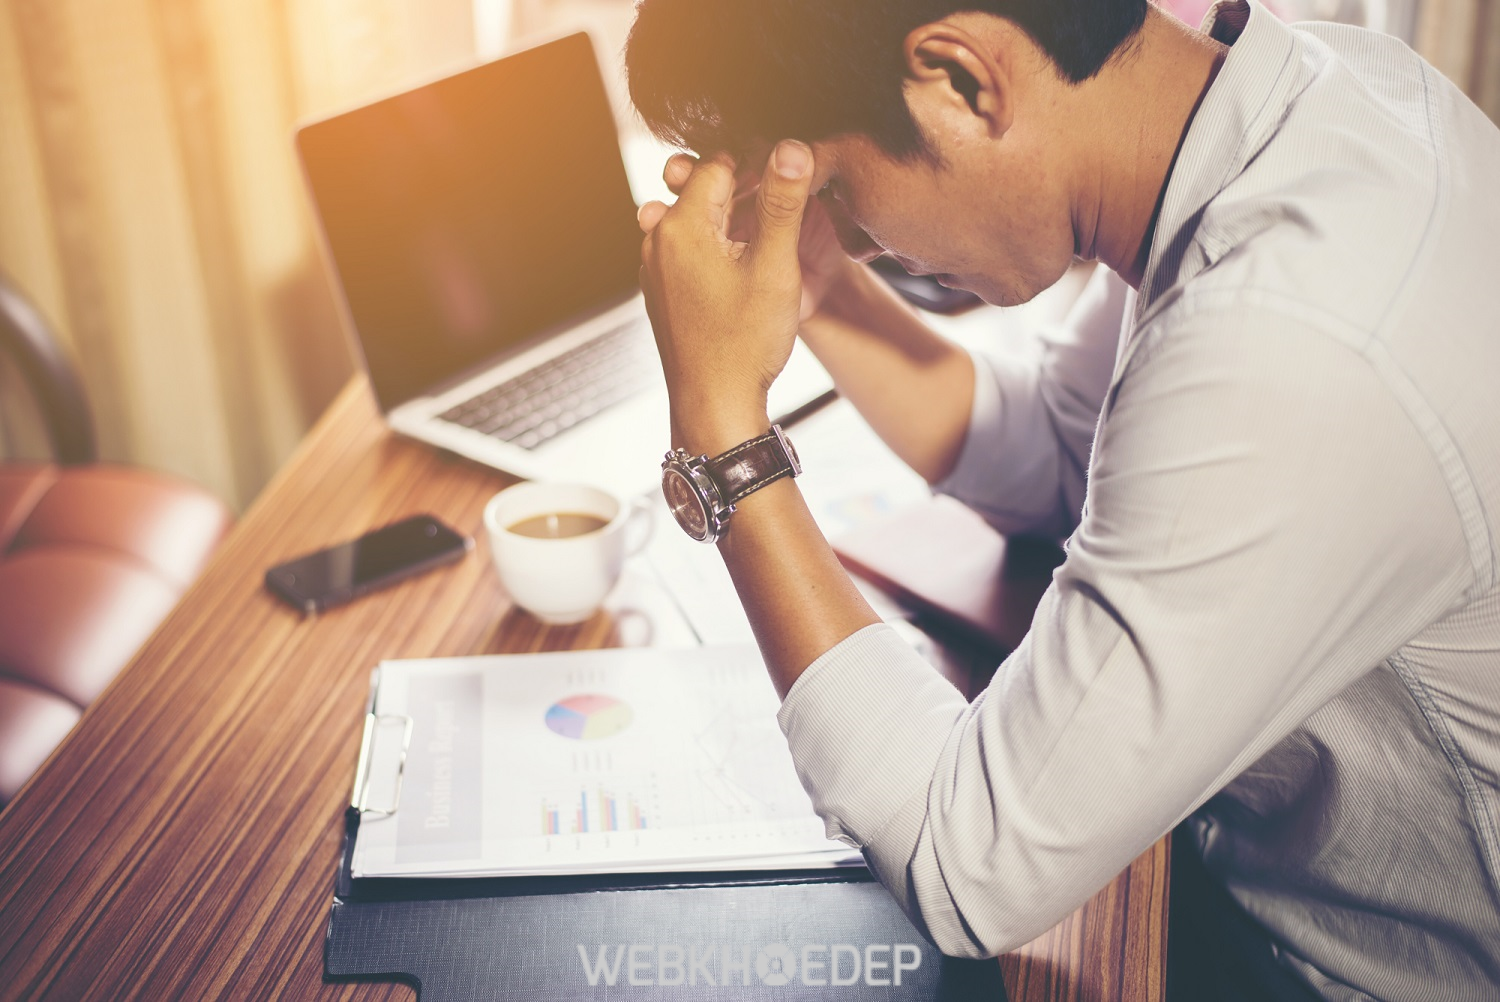 Stress nặng, kéo dài có thể khiến người bệnh kiệt sức, mệt mỏi, không còn tinh thần làm việc